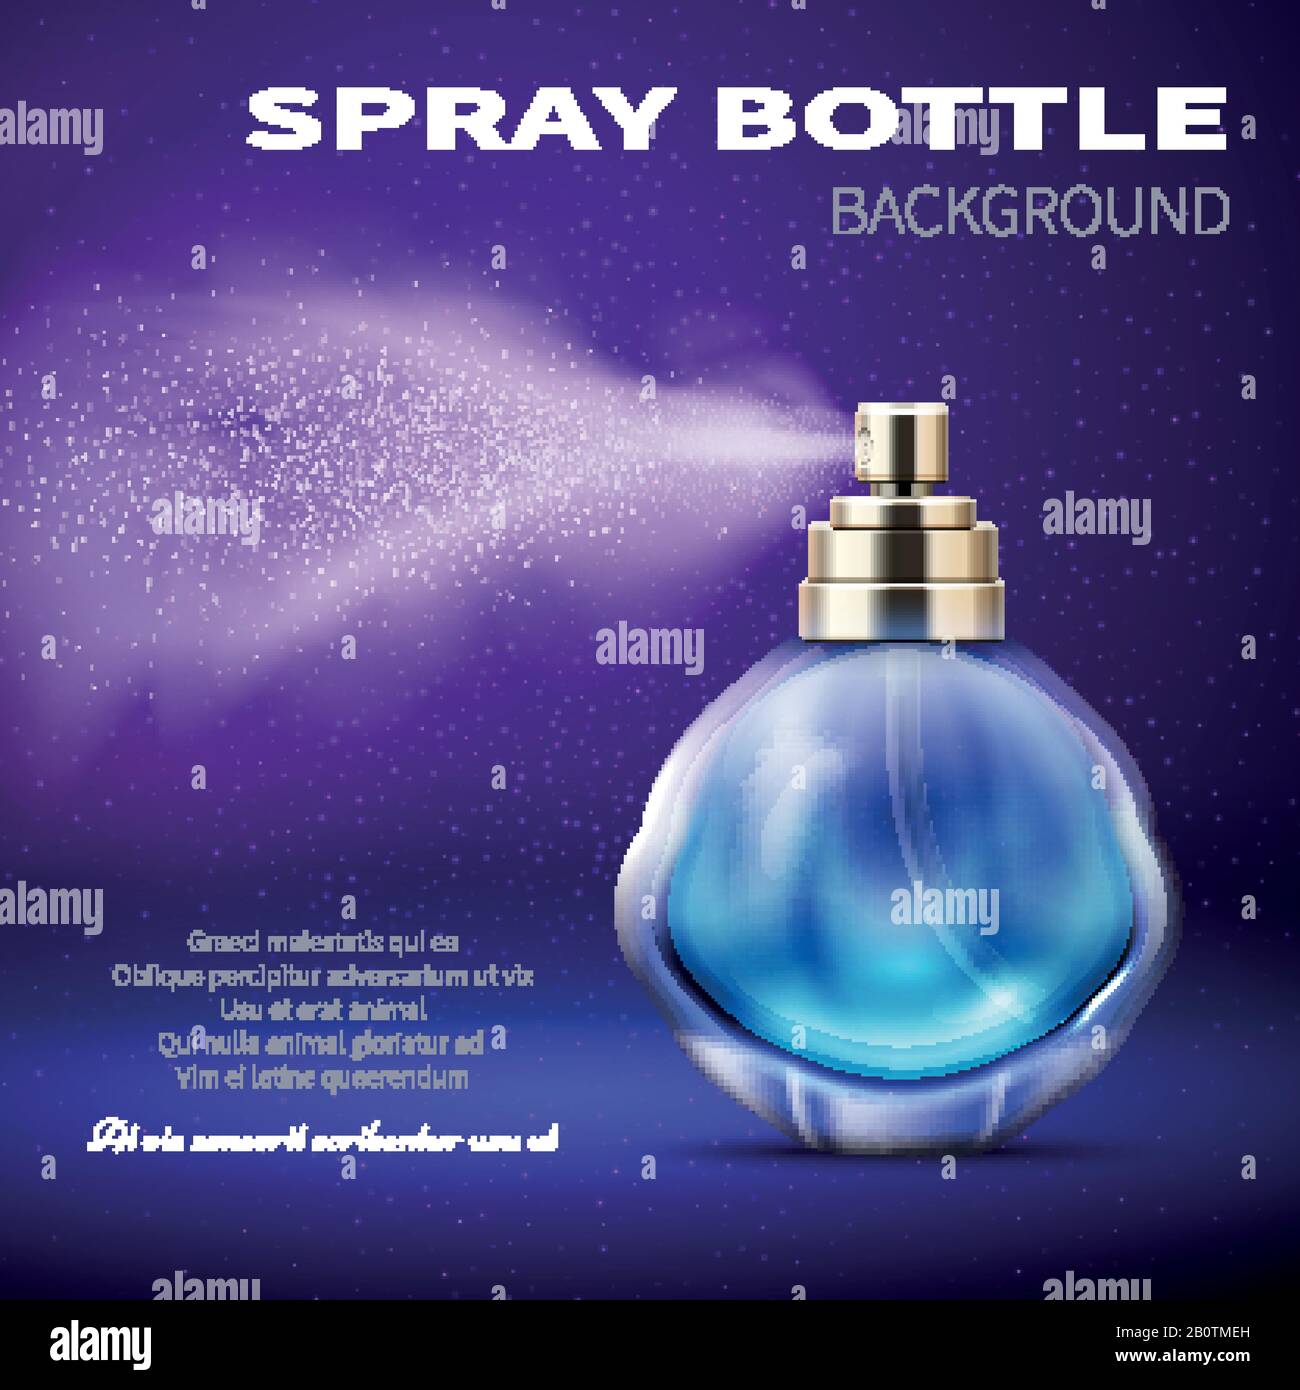 The Perfume Poster Stockfotos und -bilder Kaufen - Alamy